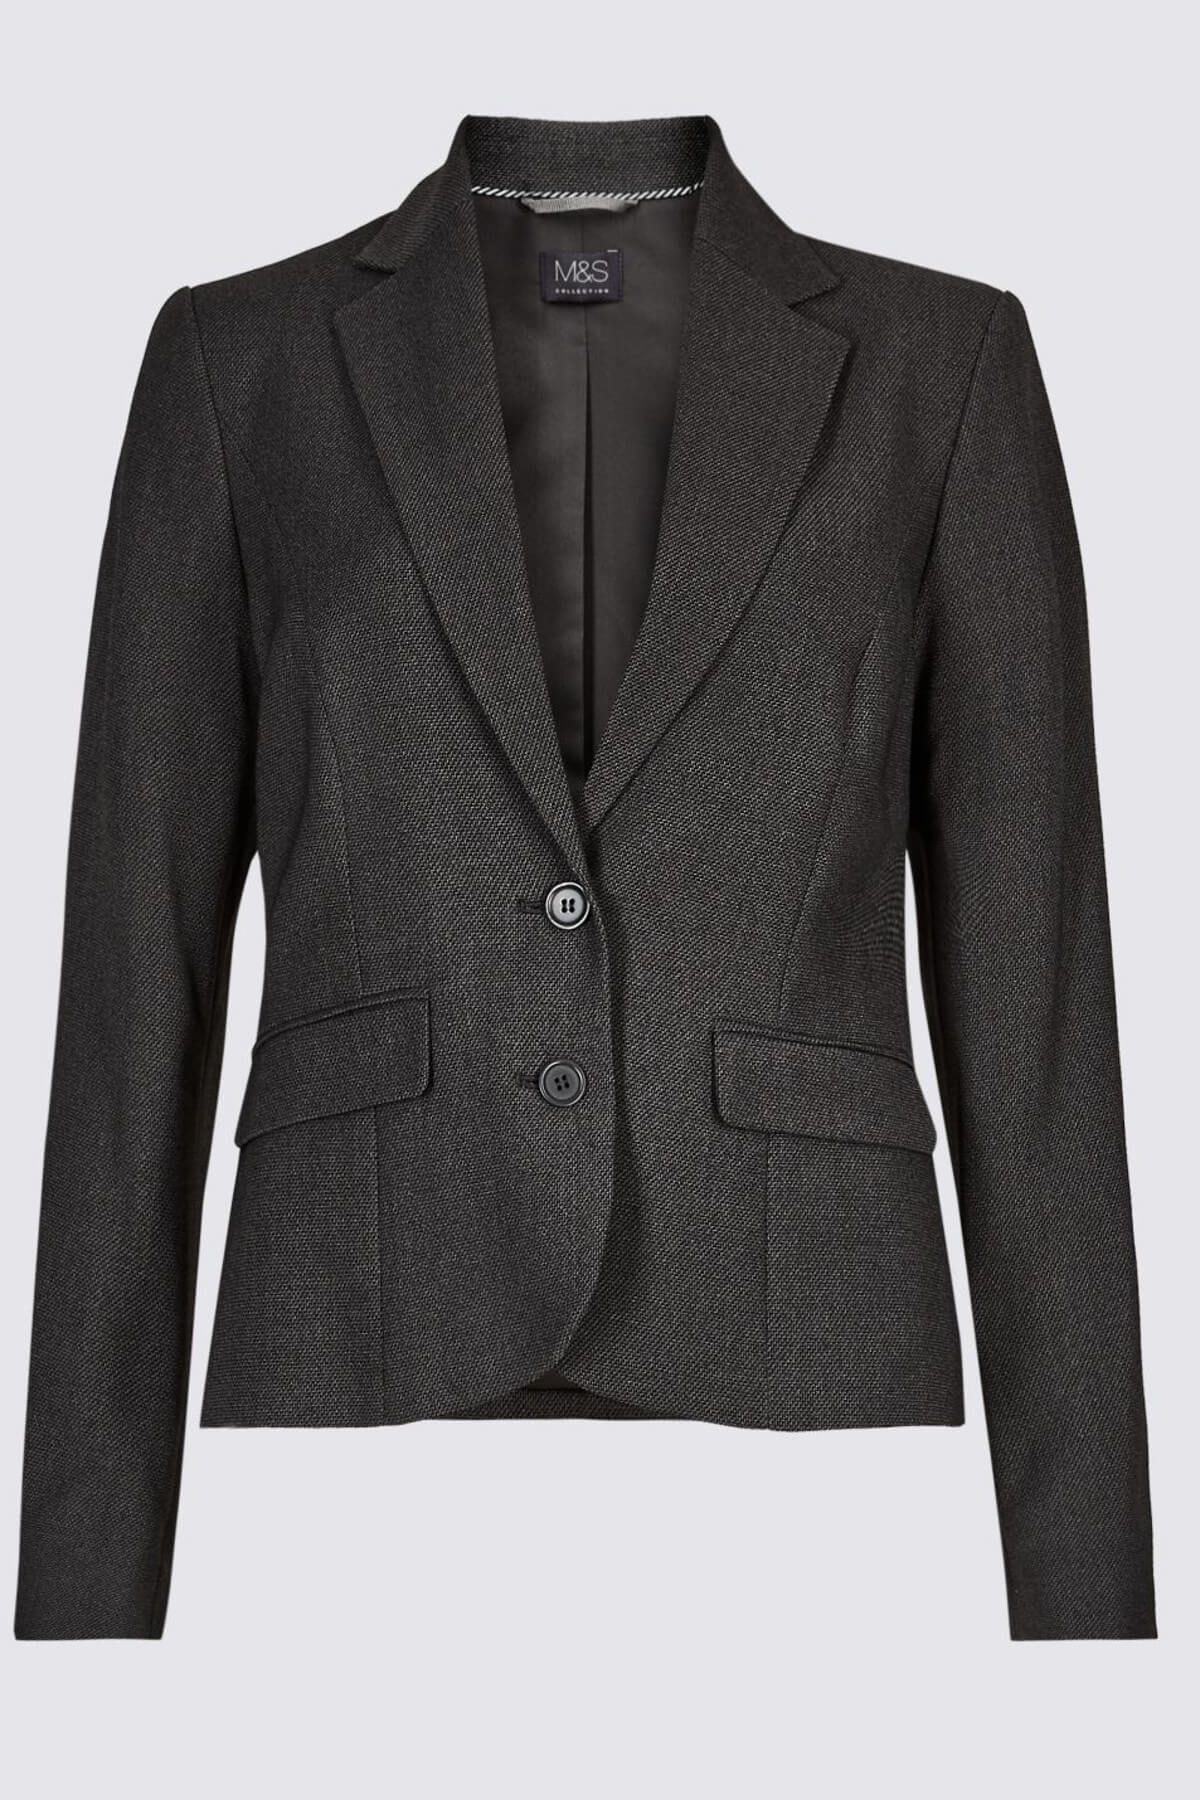 Marks & Spencer Kadın Gri Önden Çift Düğmeli Blazer Ceket T59001564J